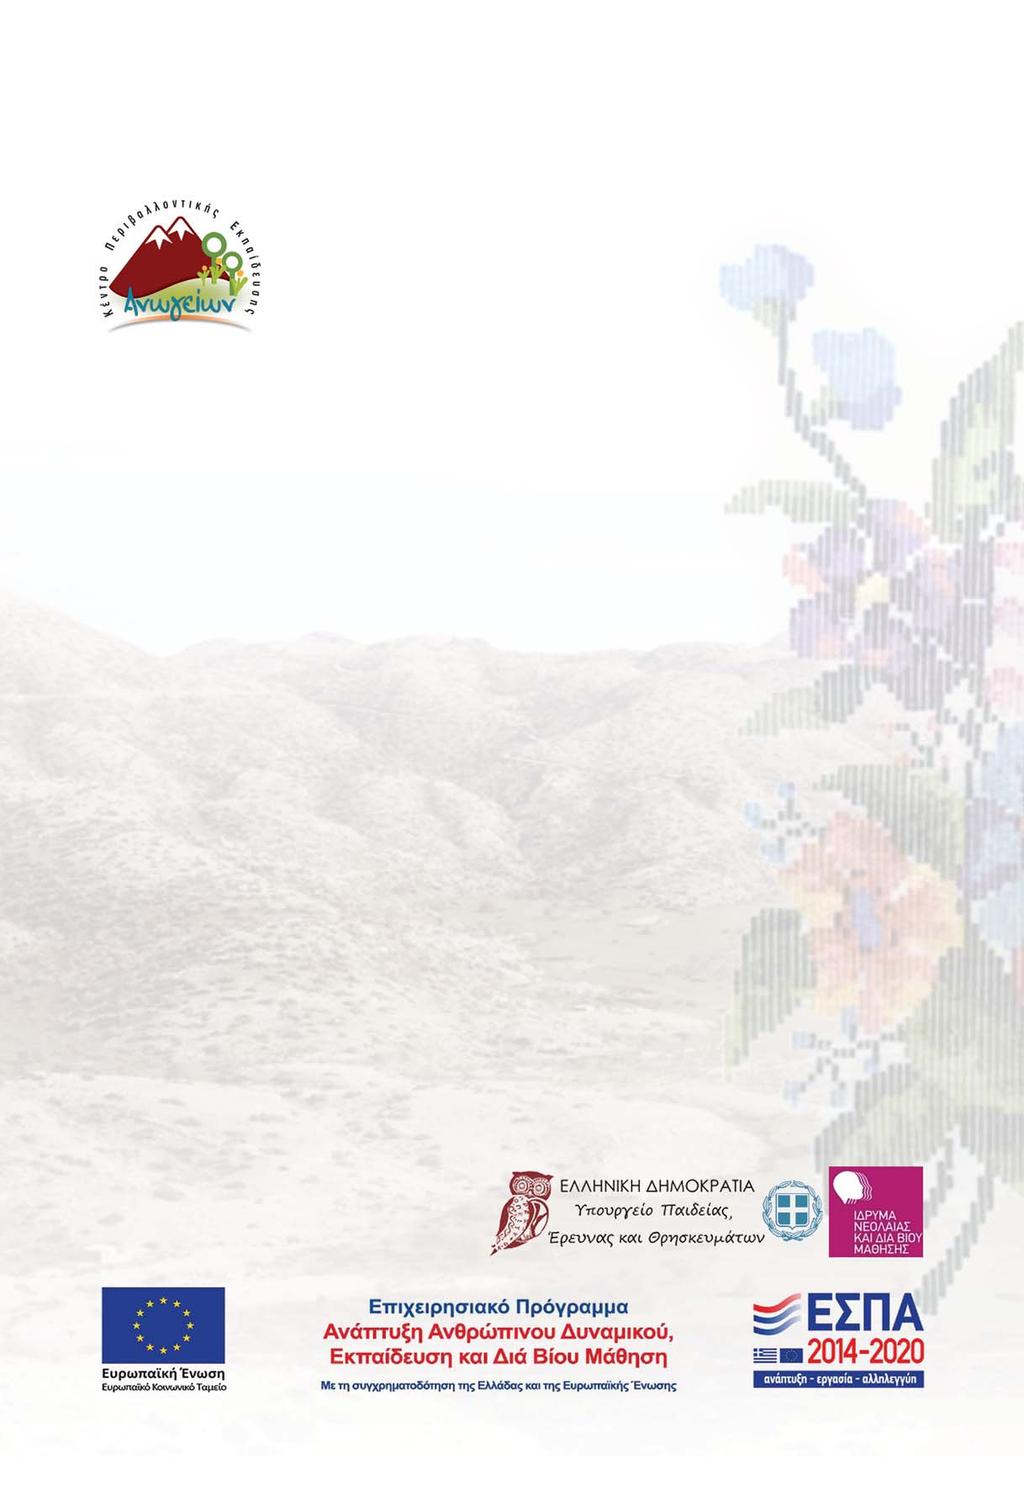 Κέντρο Περιβαλλοντικής Εκπαίδευσης Ανωγείων Συγγραφική ομάδα της παρούσας έκδοσης Η Παιδαγωγική Ομάδα του ΚΠΕ Ανωγείων κατά τη διάρκεια των σχολικών ετών 2015-2016 Κεφαλογιάννη Ζαχαρένια, Φιλόλογος,